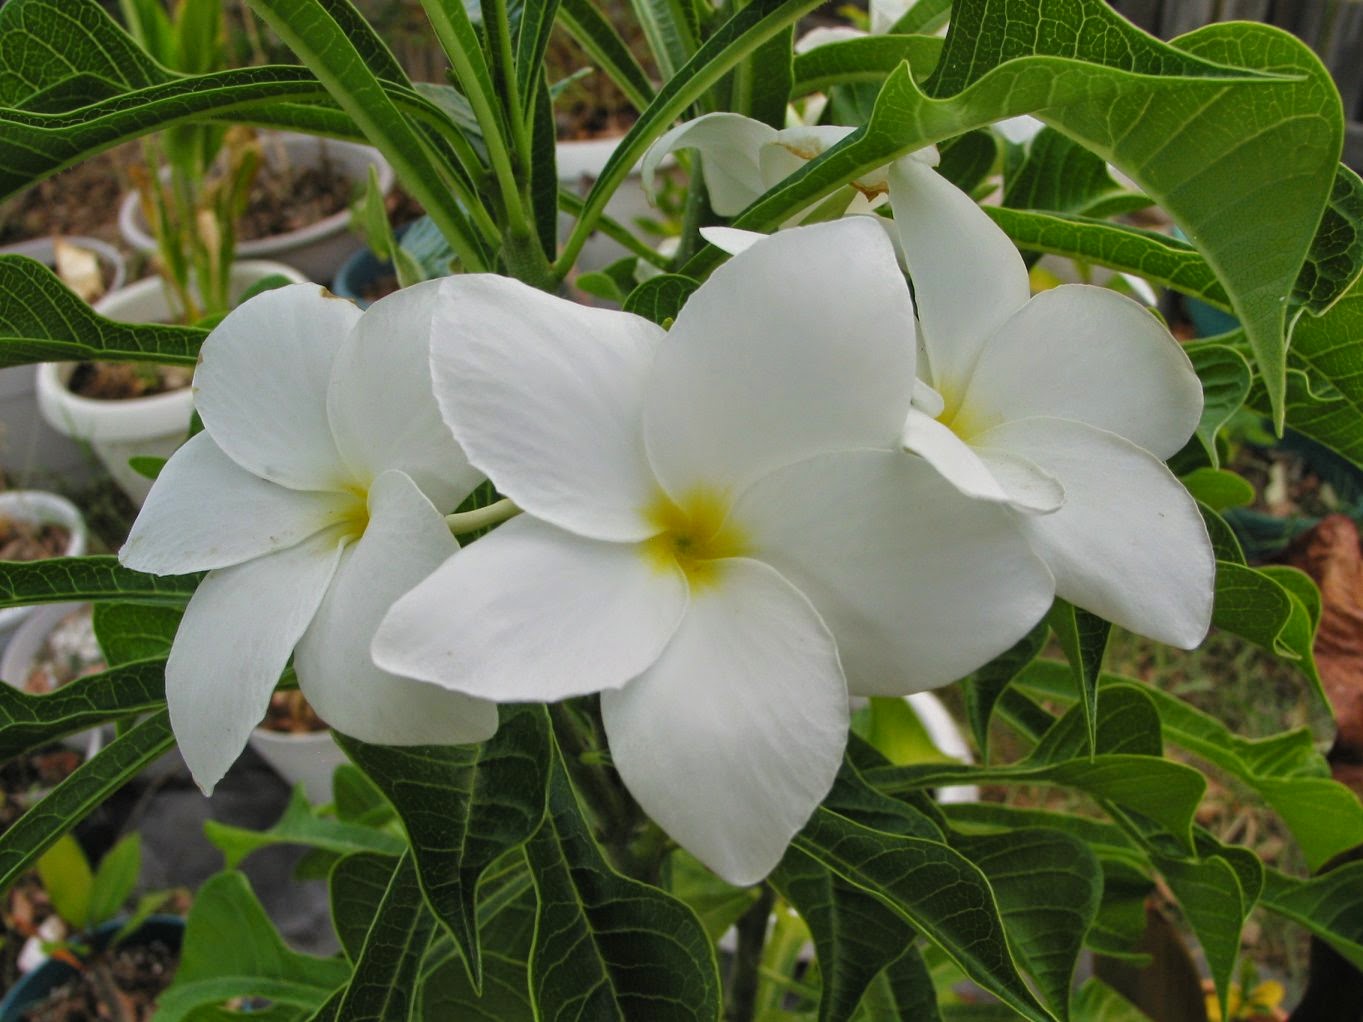  Gambar  Jenis Jenis Bunga  Kamboja  Manfaat di dalam 